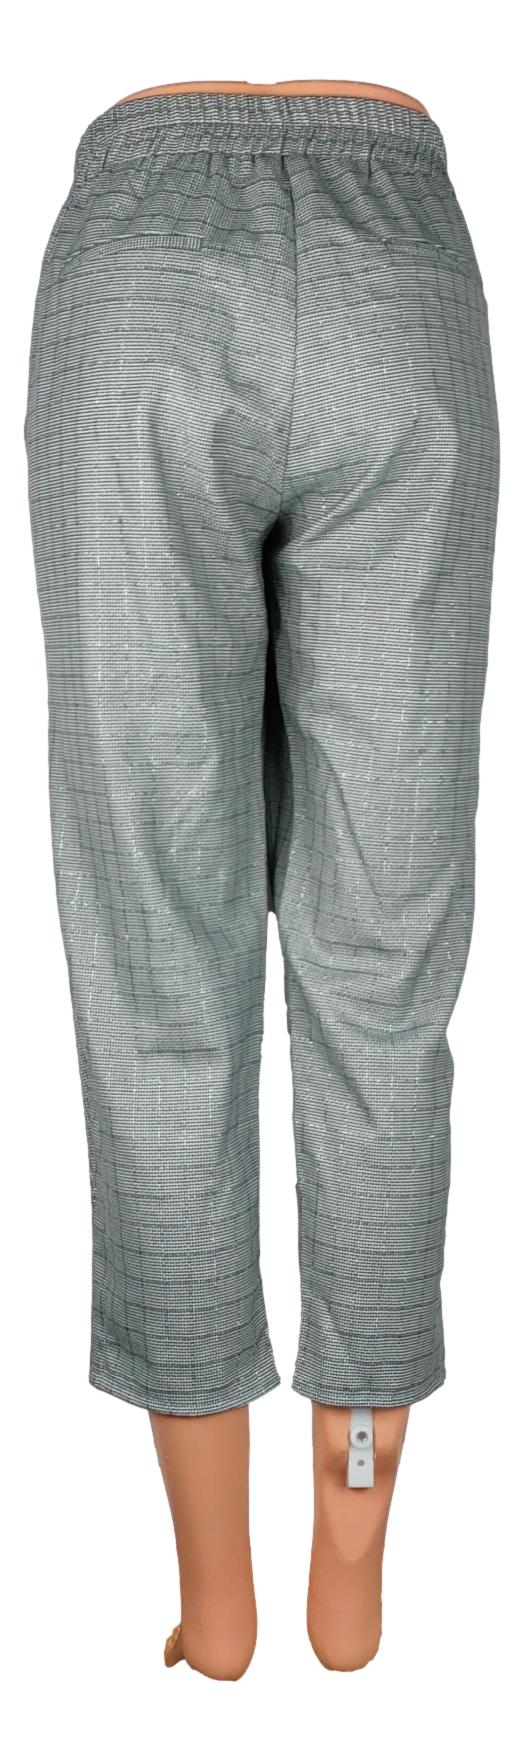 Pantalon Tally Weijl - Taille 42